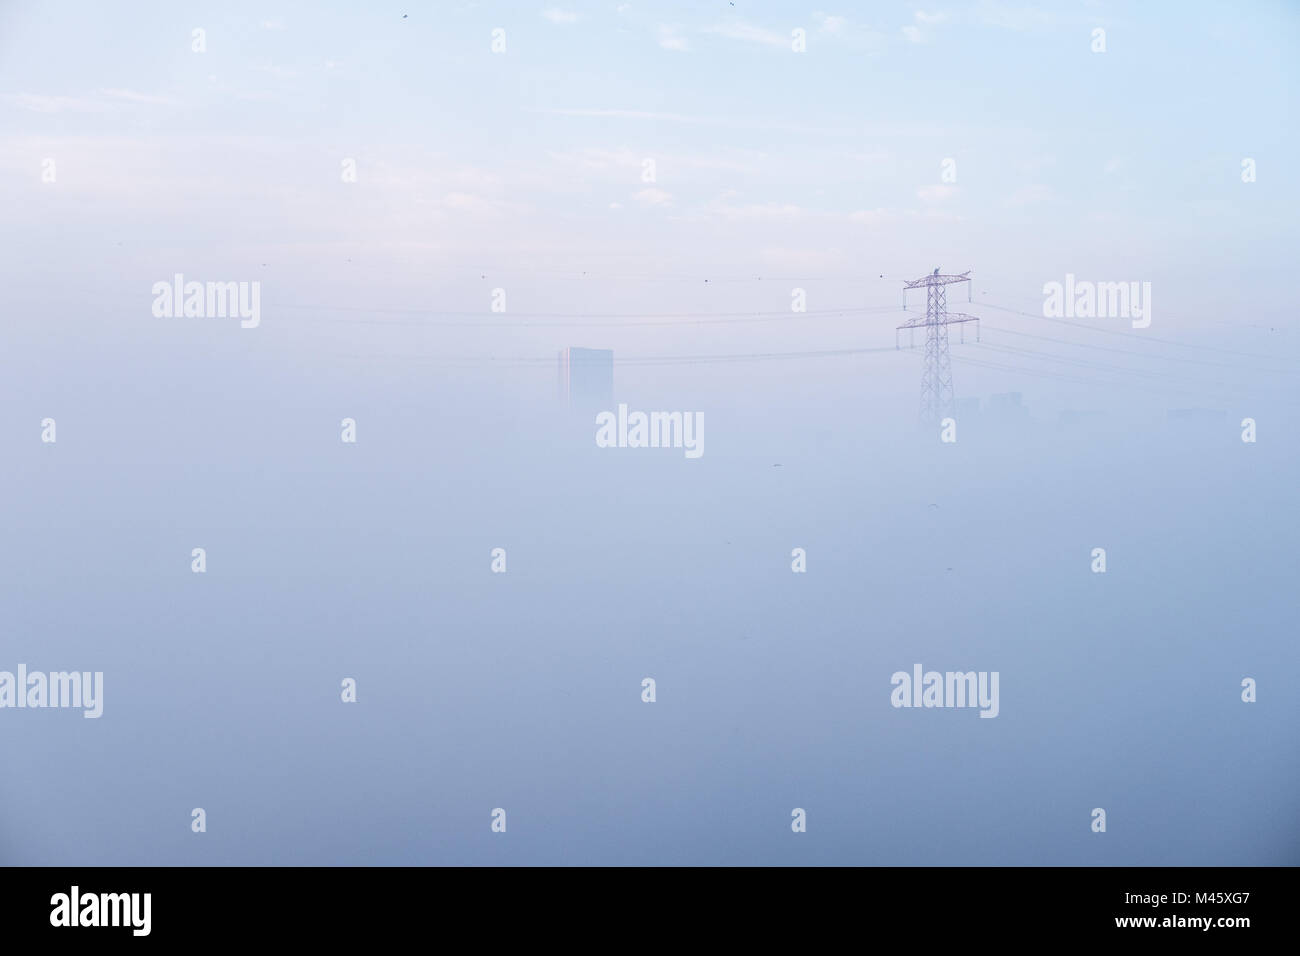 Abu Dhabi cubierto con la manta de niebla densa - ahogado en la niebla, edificios y torres eléctricas a través de niebla peaking Foto de stock